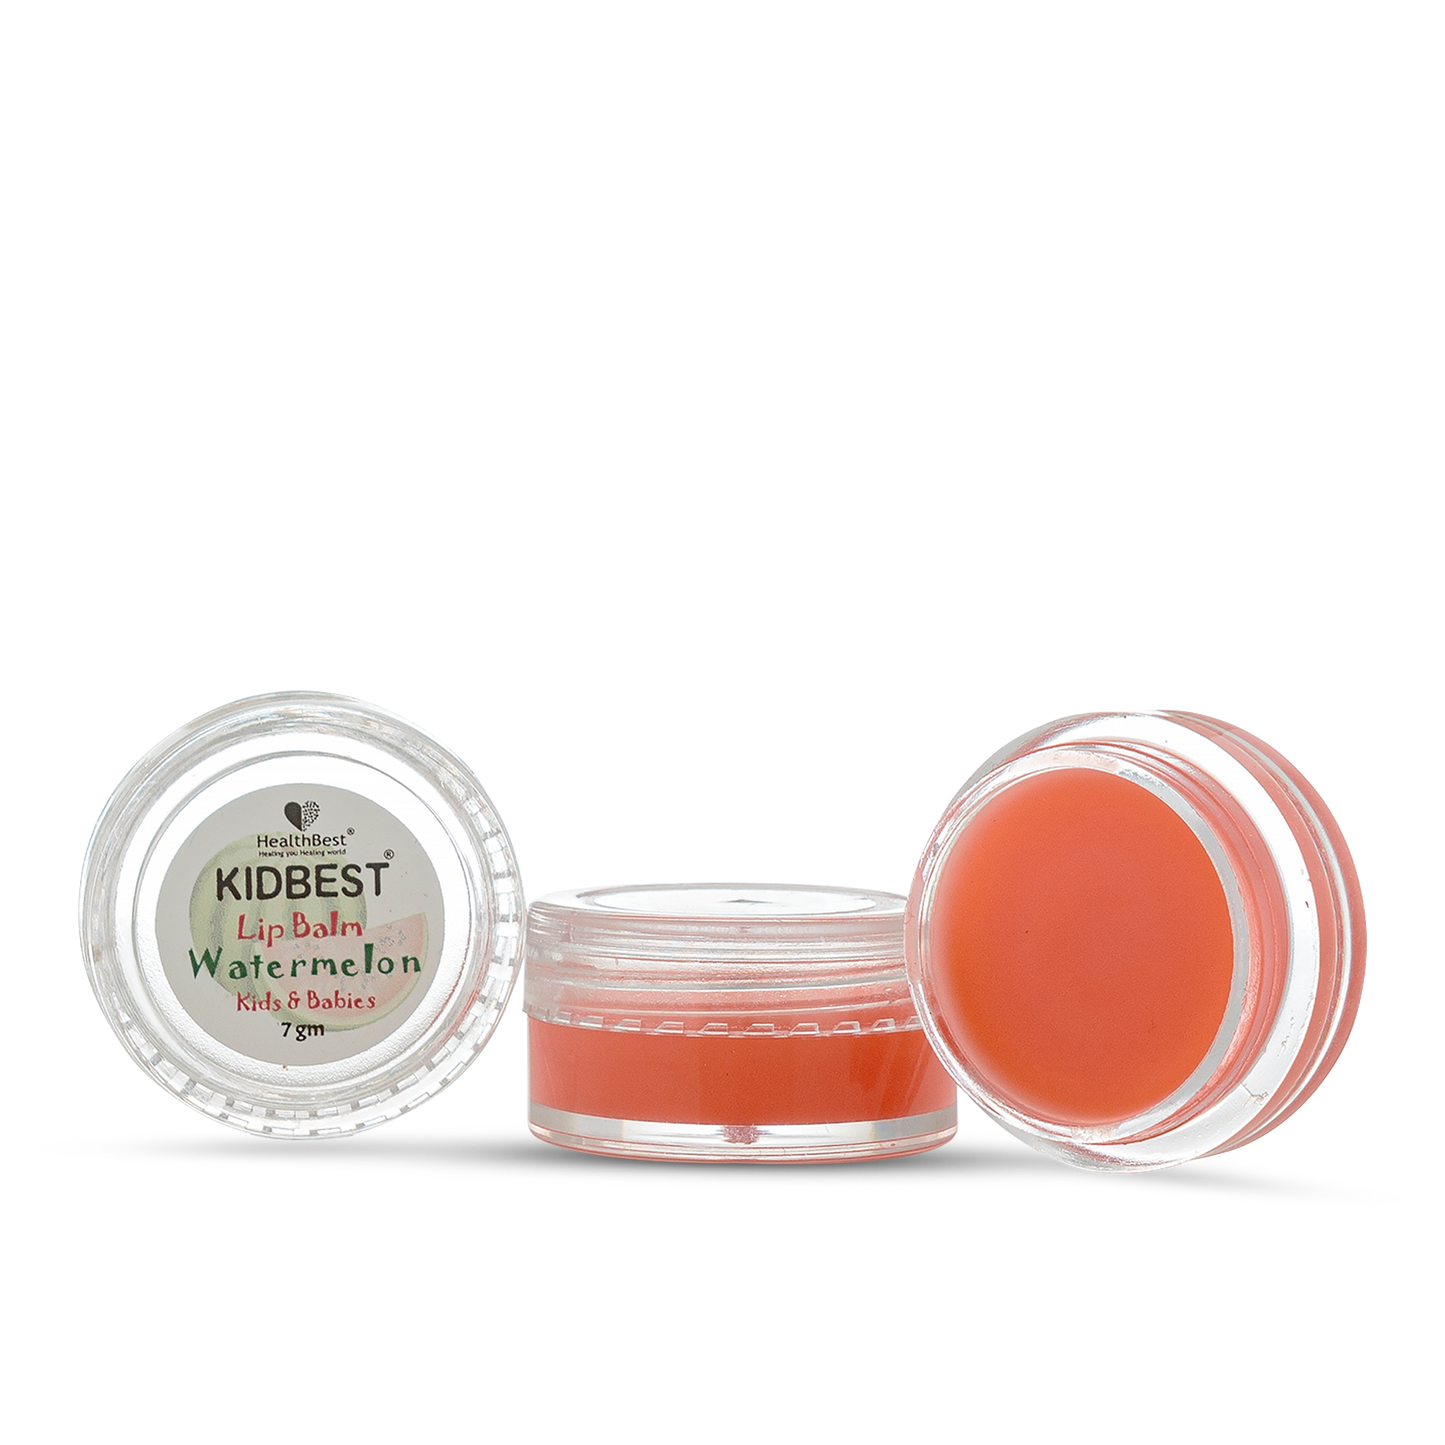 HealthBest Kidbest Lip Balm with Watermelon Flavor